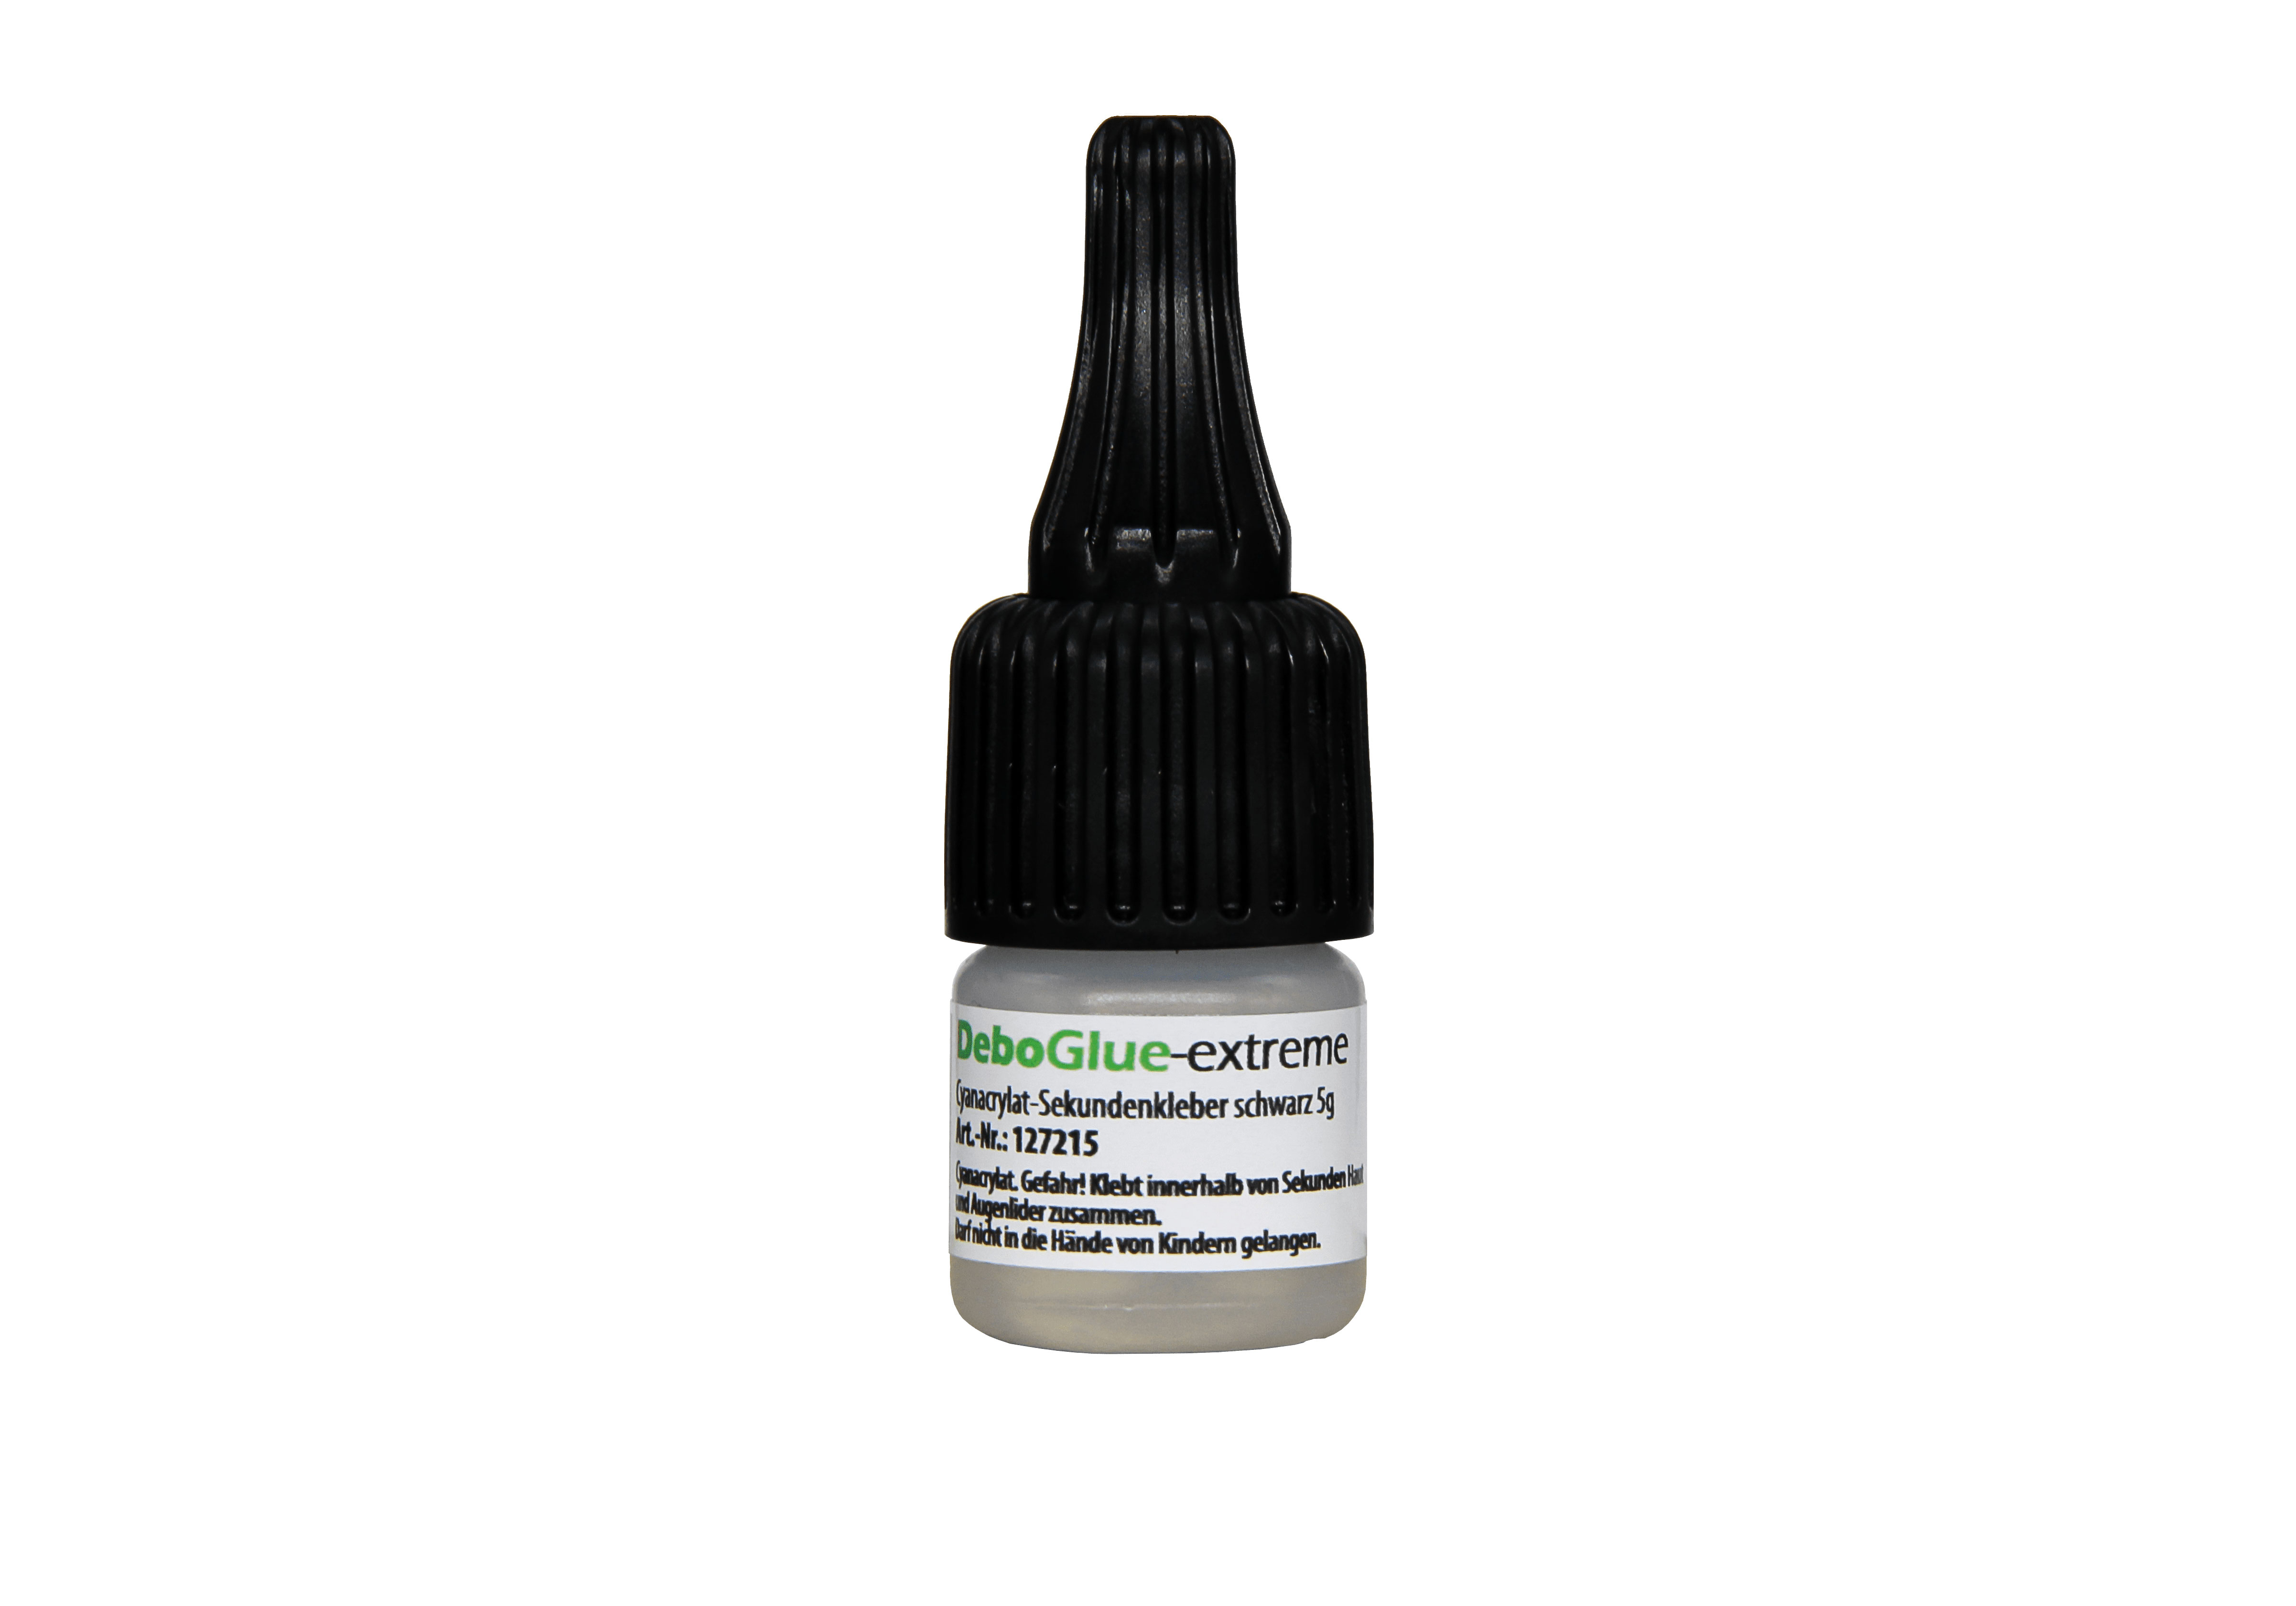 DeboGlue-xtreme Cyanacrylat-Sekundenkleber schwarz